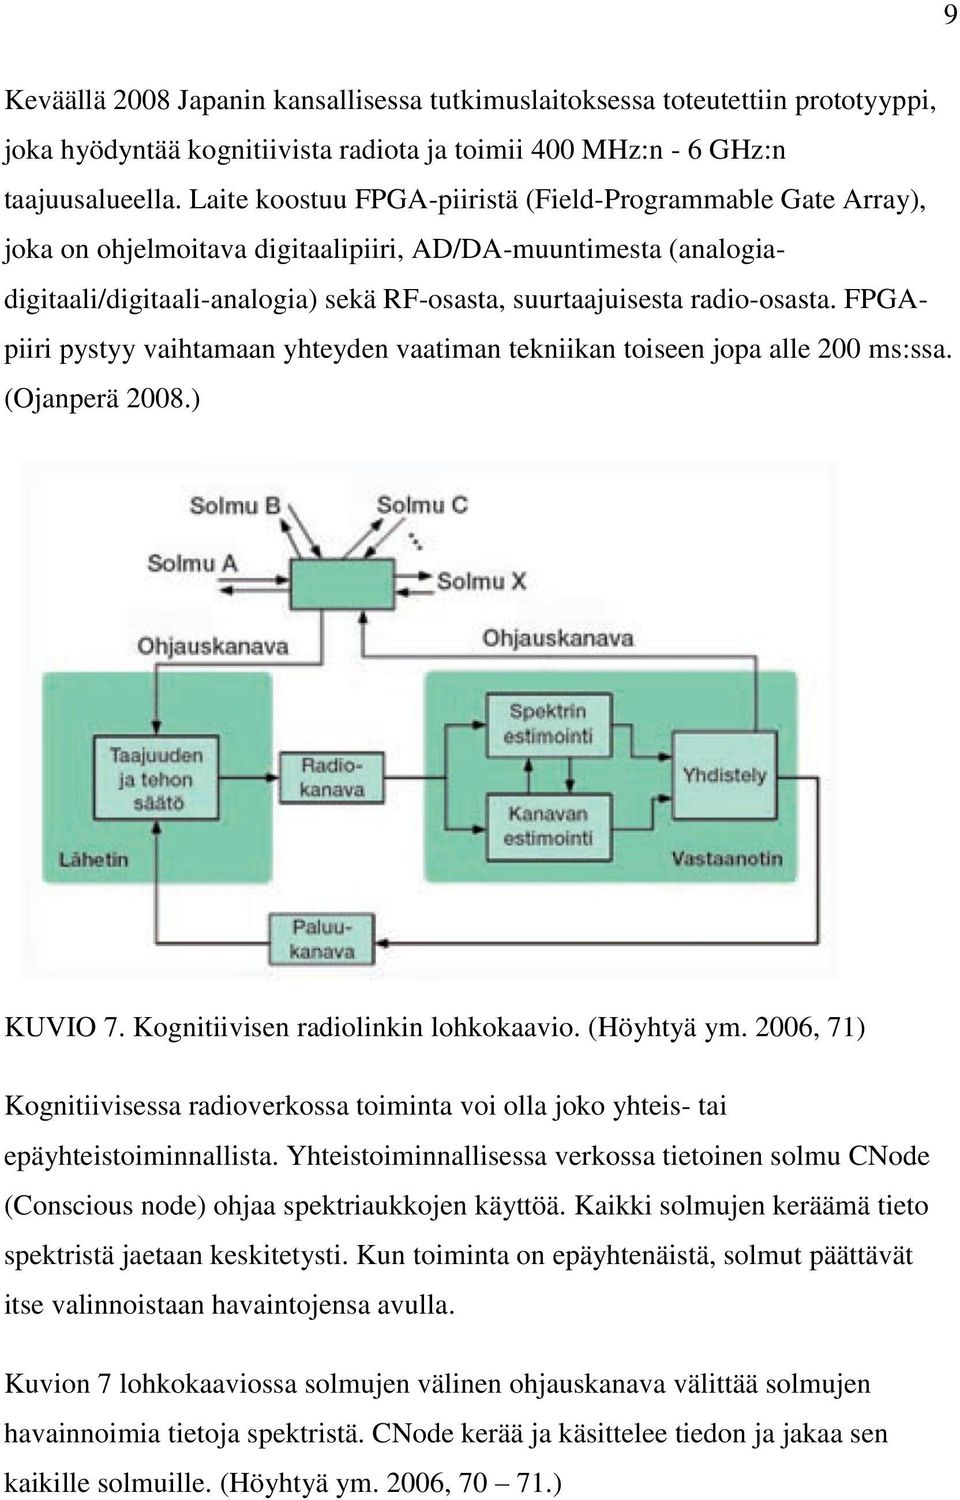 FPGApiiri pystyy vaihtamaan yhteyden vaatiman tekniikan toiseen jopa alle 200 ms:ssa. (Ojanperä 2008.) KUVIO 7. Kognitiivisen radiolinkin lohkokaavio. (Höyhtyä ym.